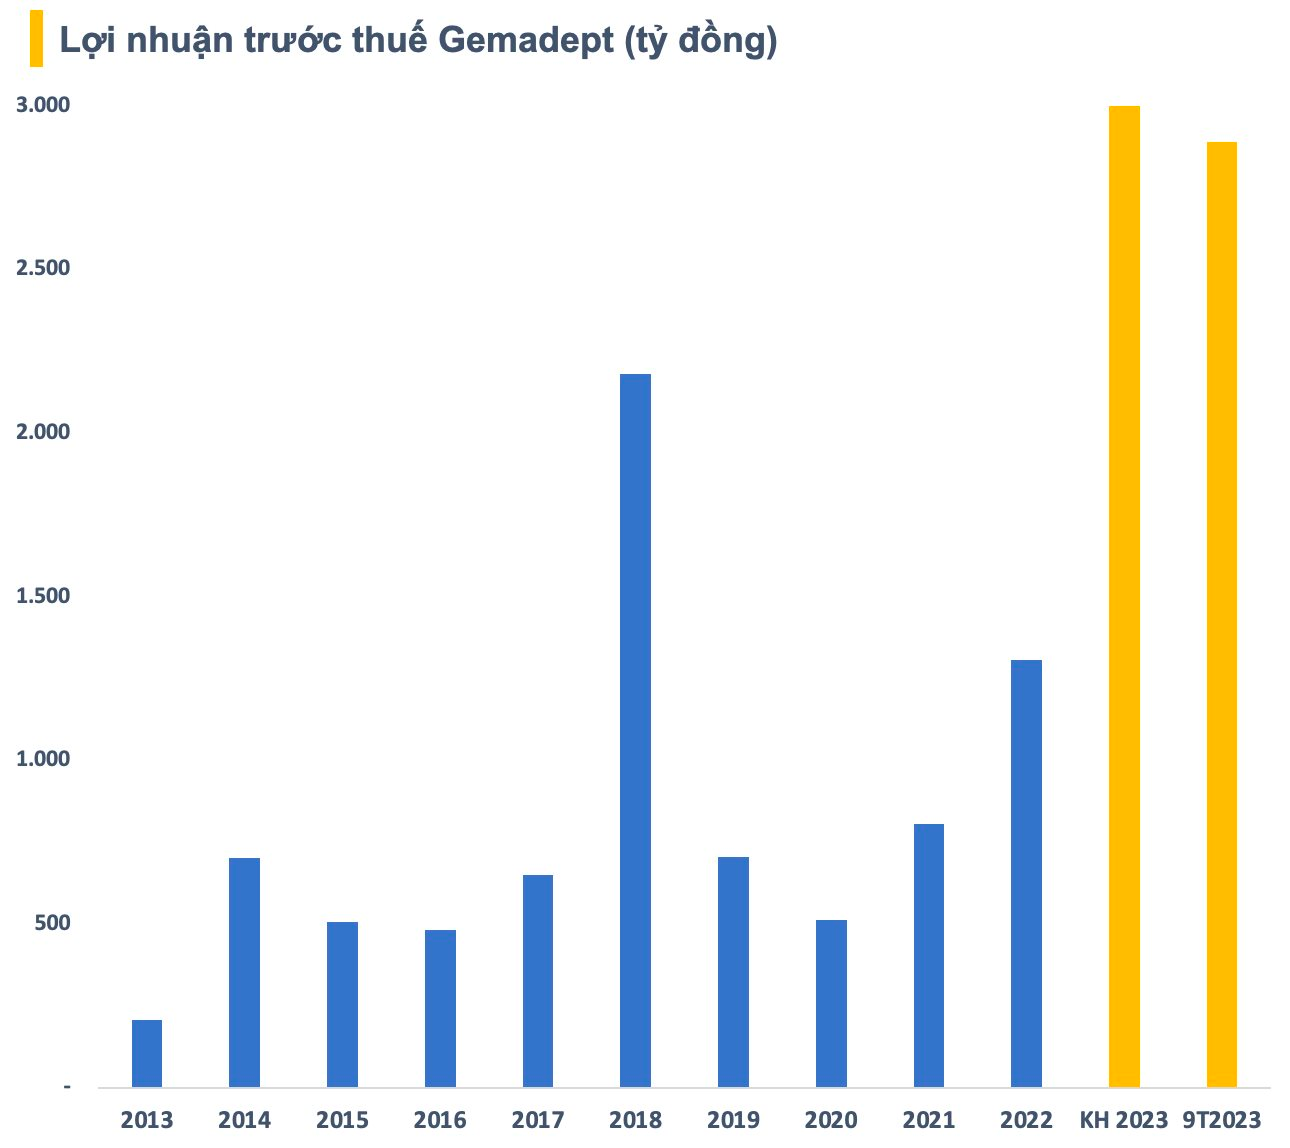 Cổ phiếu GMD bứt phá đỉnh lịch sử, đại gia ngành cảng Gemadept “gõ cửa” câu lạc bộ vốn hóa tỷ USD